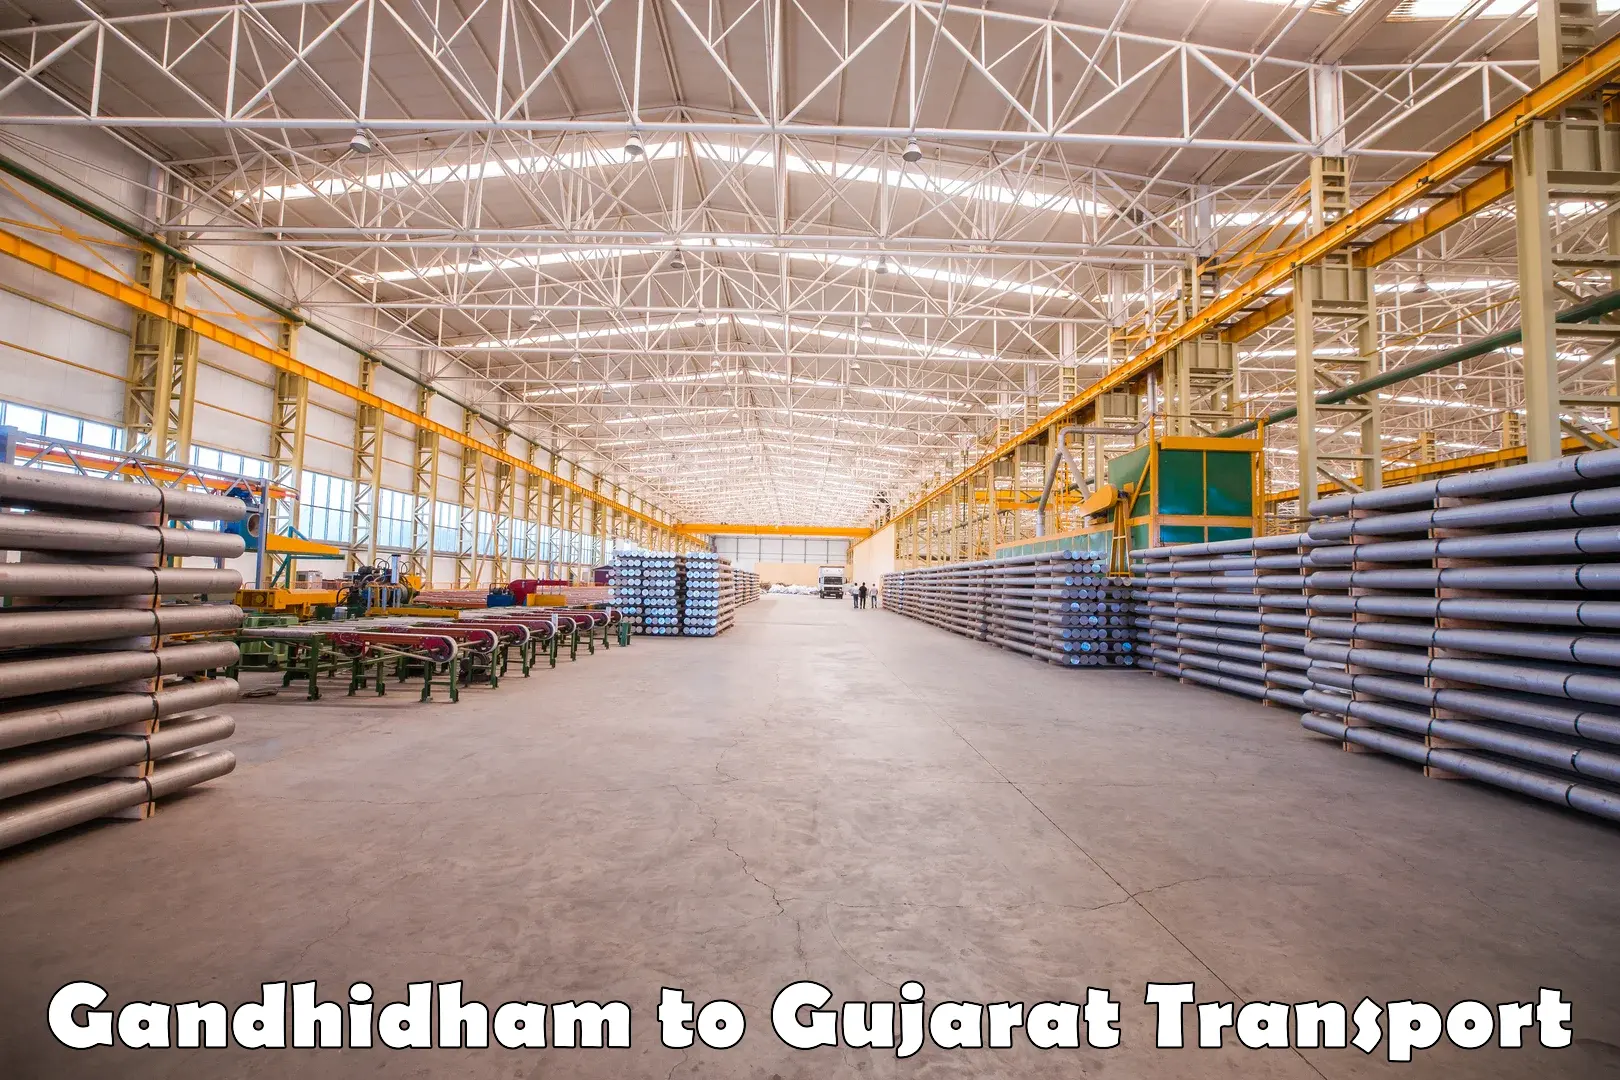 Air cargo transport services Gandhidham to Gandhidham